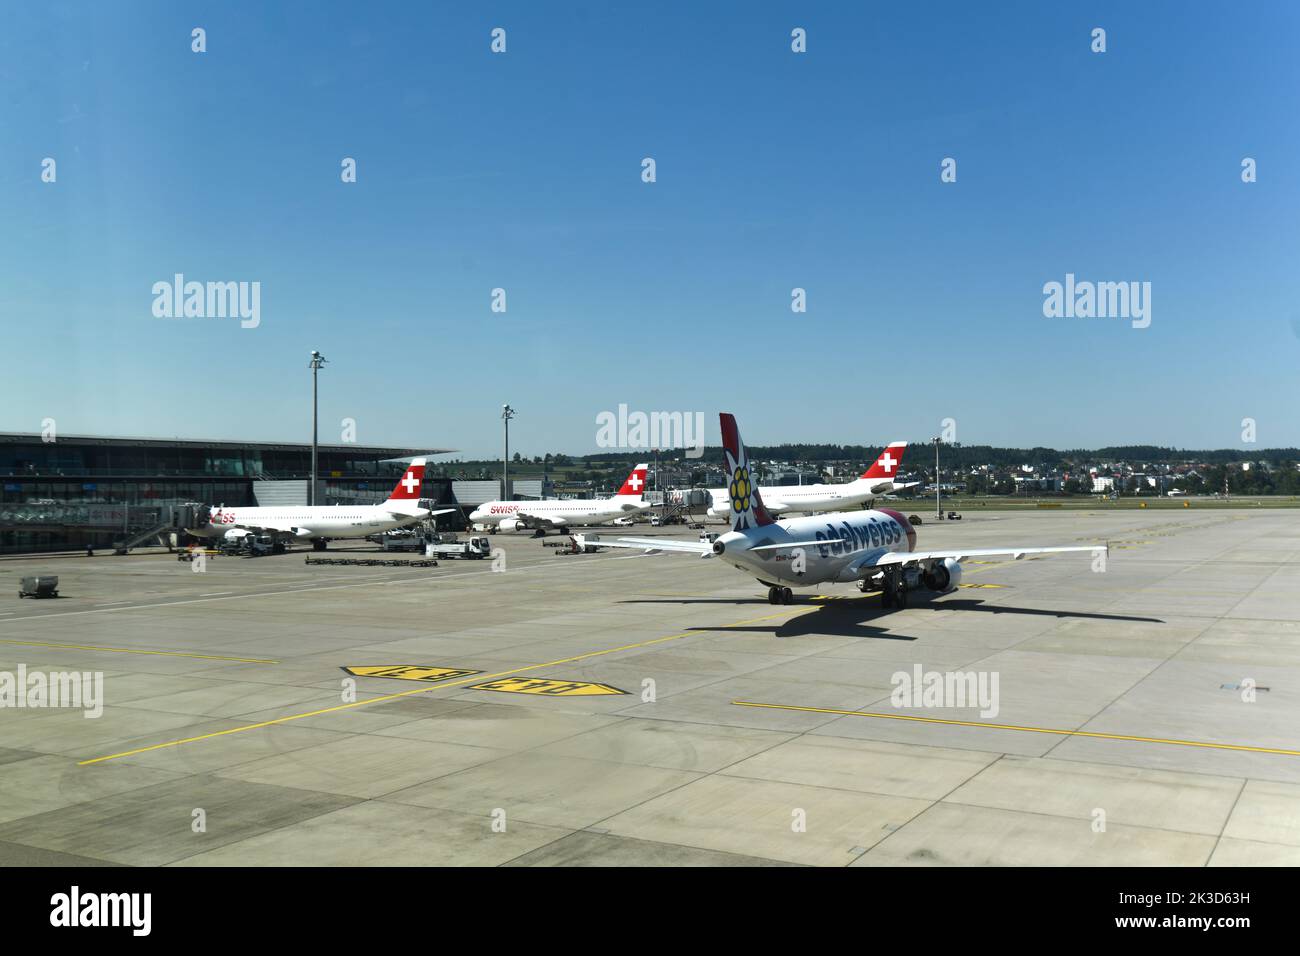 Swiss Air airplanes in Zurich Airport, Switzerland Stock Photo